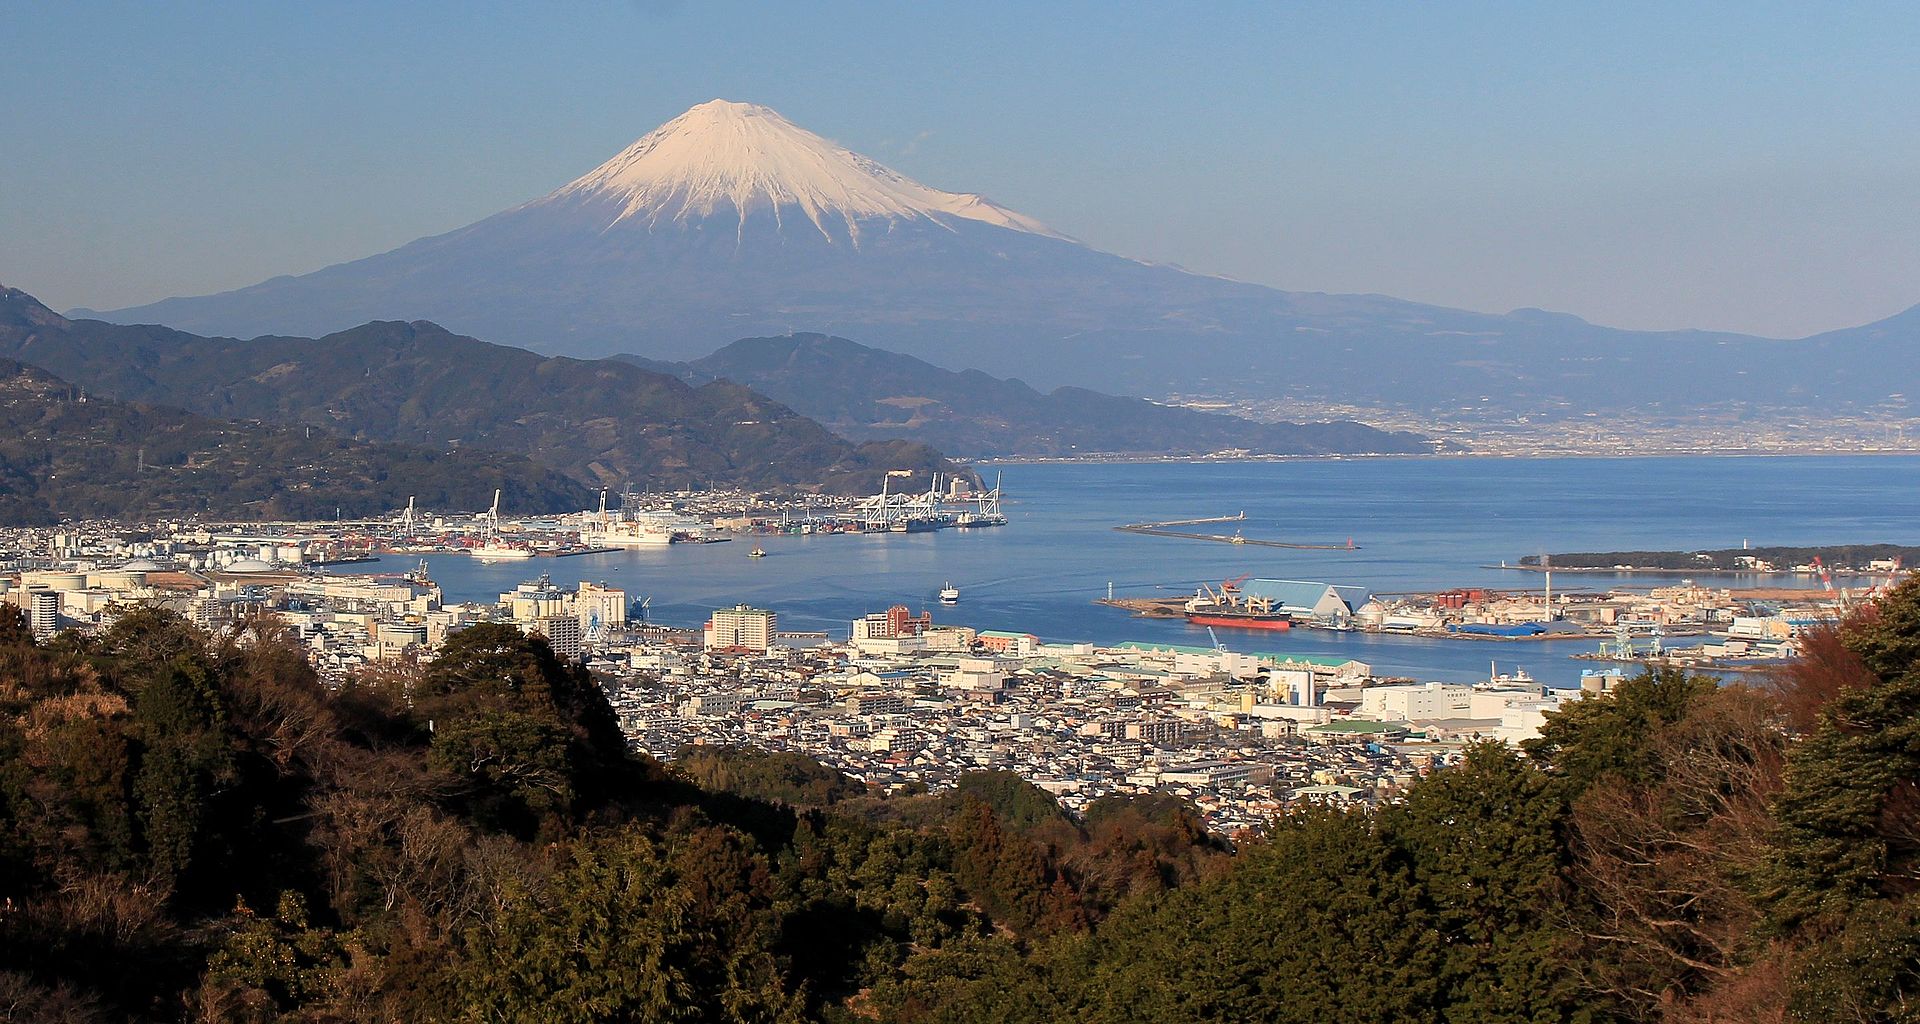 Shizuoka und der Fuji im Hintergrund.